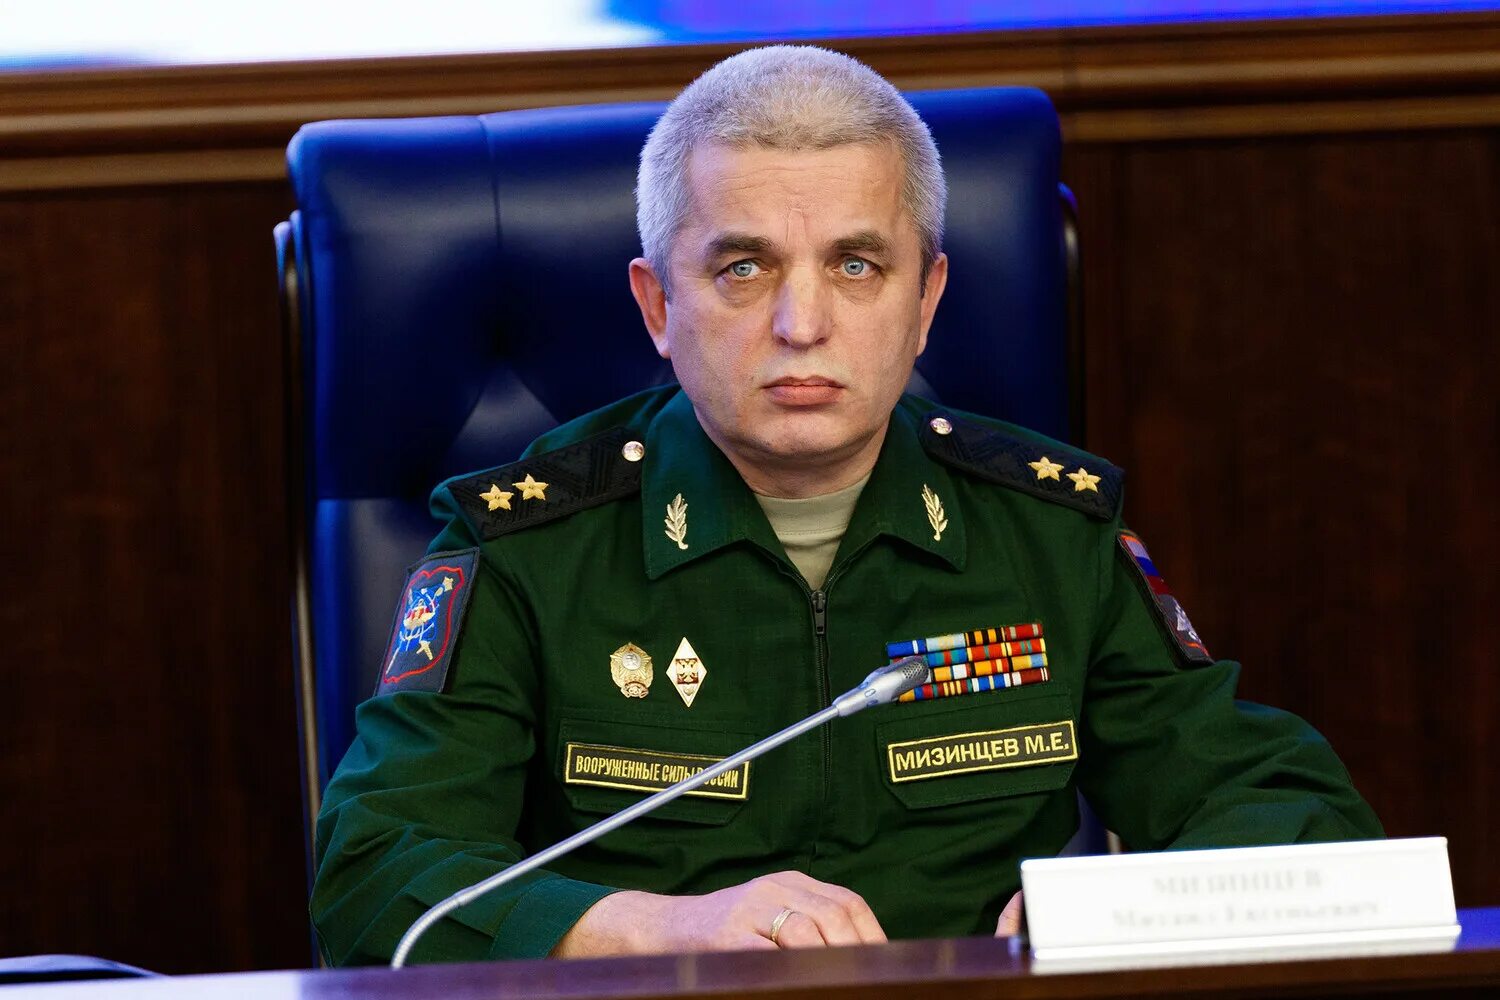 Заместитель министра обороны российской федерации иванов